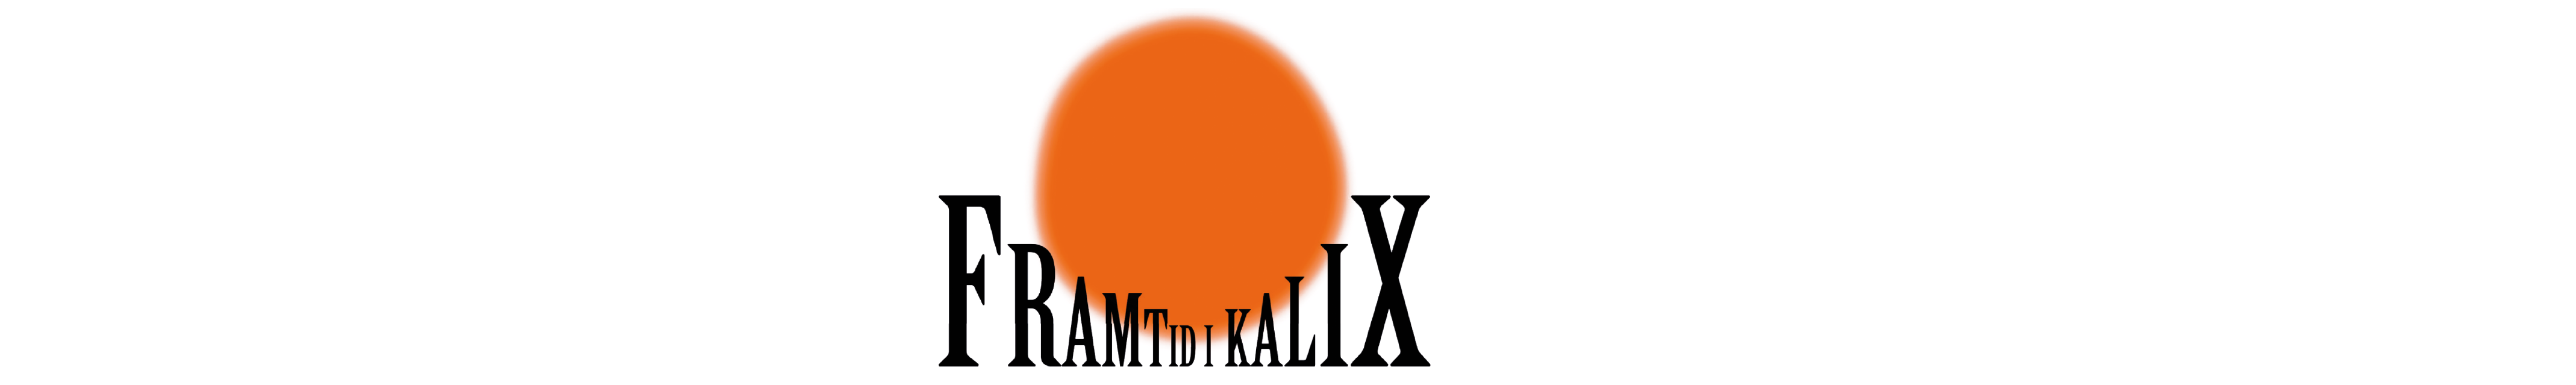 Symbol för partiet Framtid Kalix, ordbild i svart med orange sol.